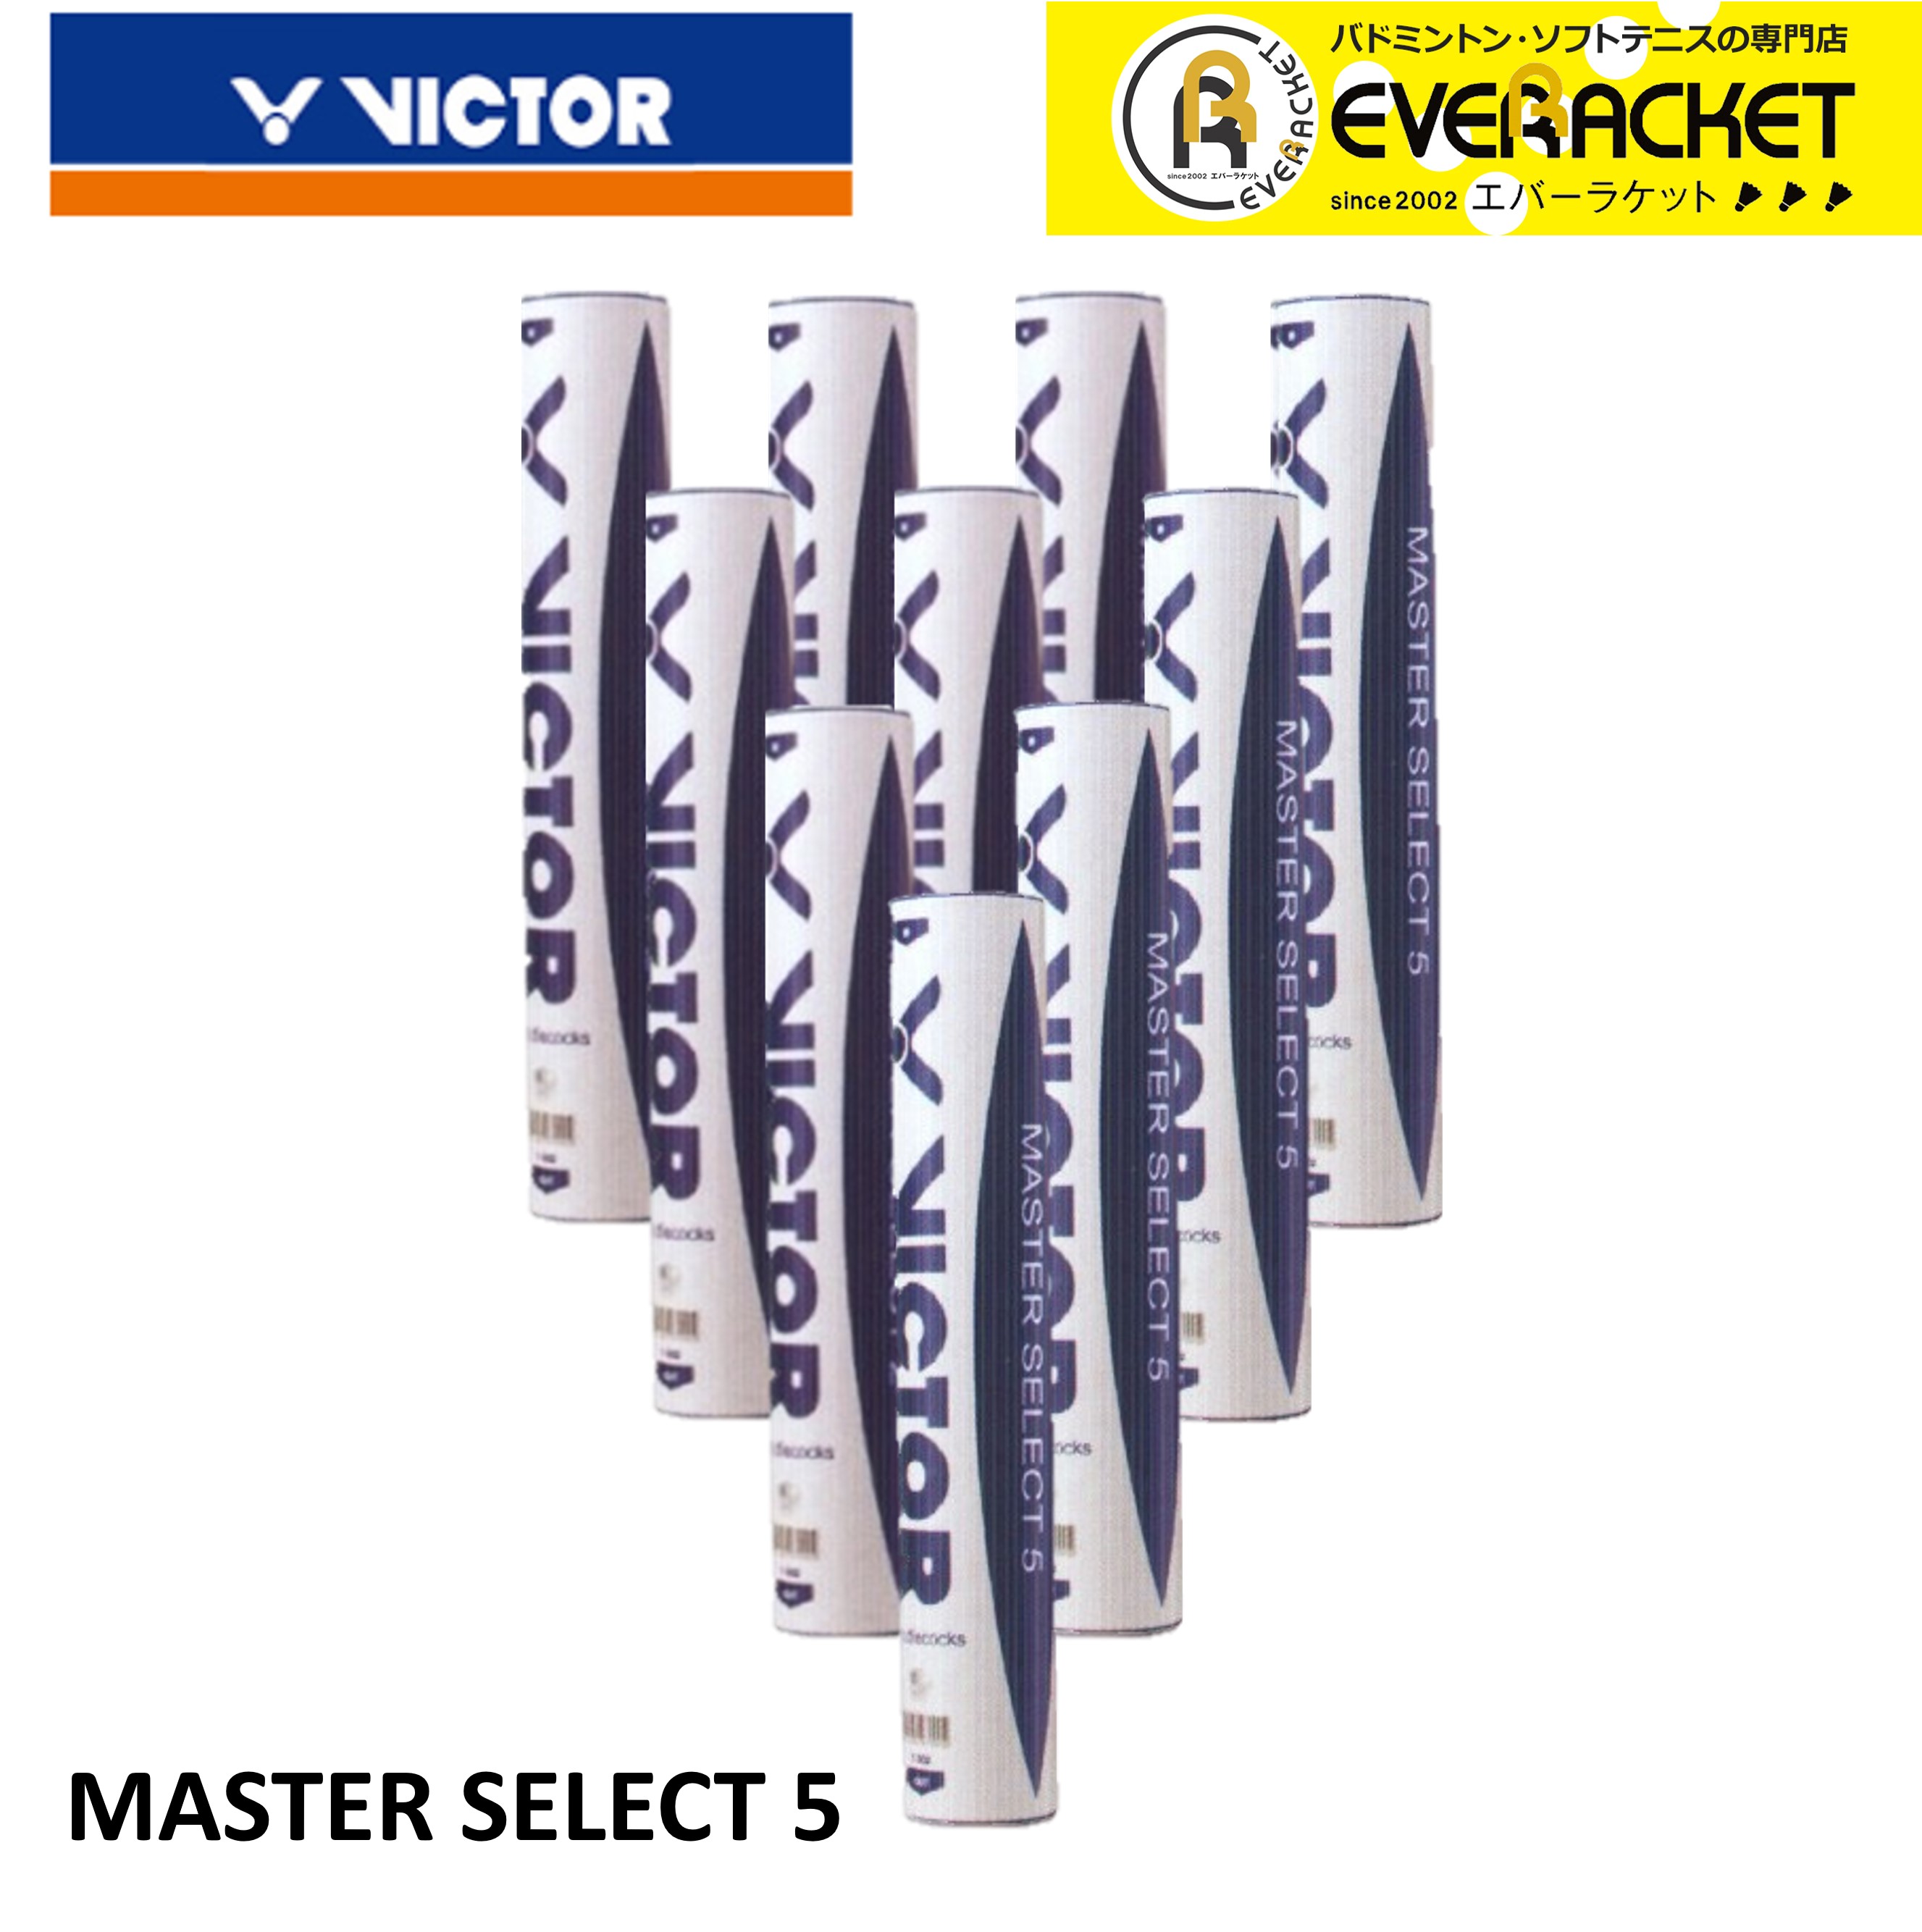 【10ダース】ビクター VICTOR シャトル 練習球 マスターセレクト5 masterselect5 バドミントン